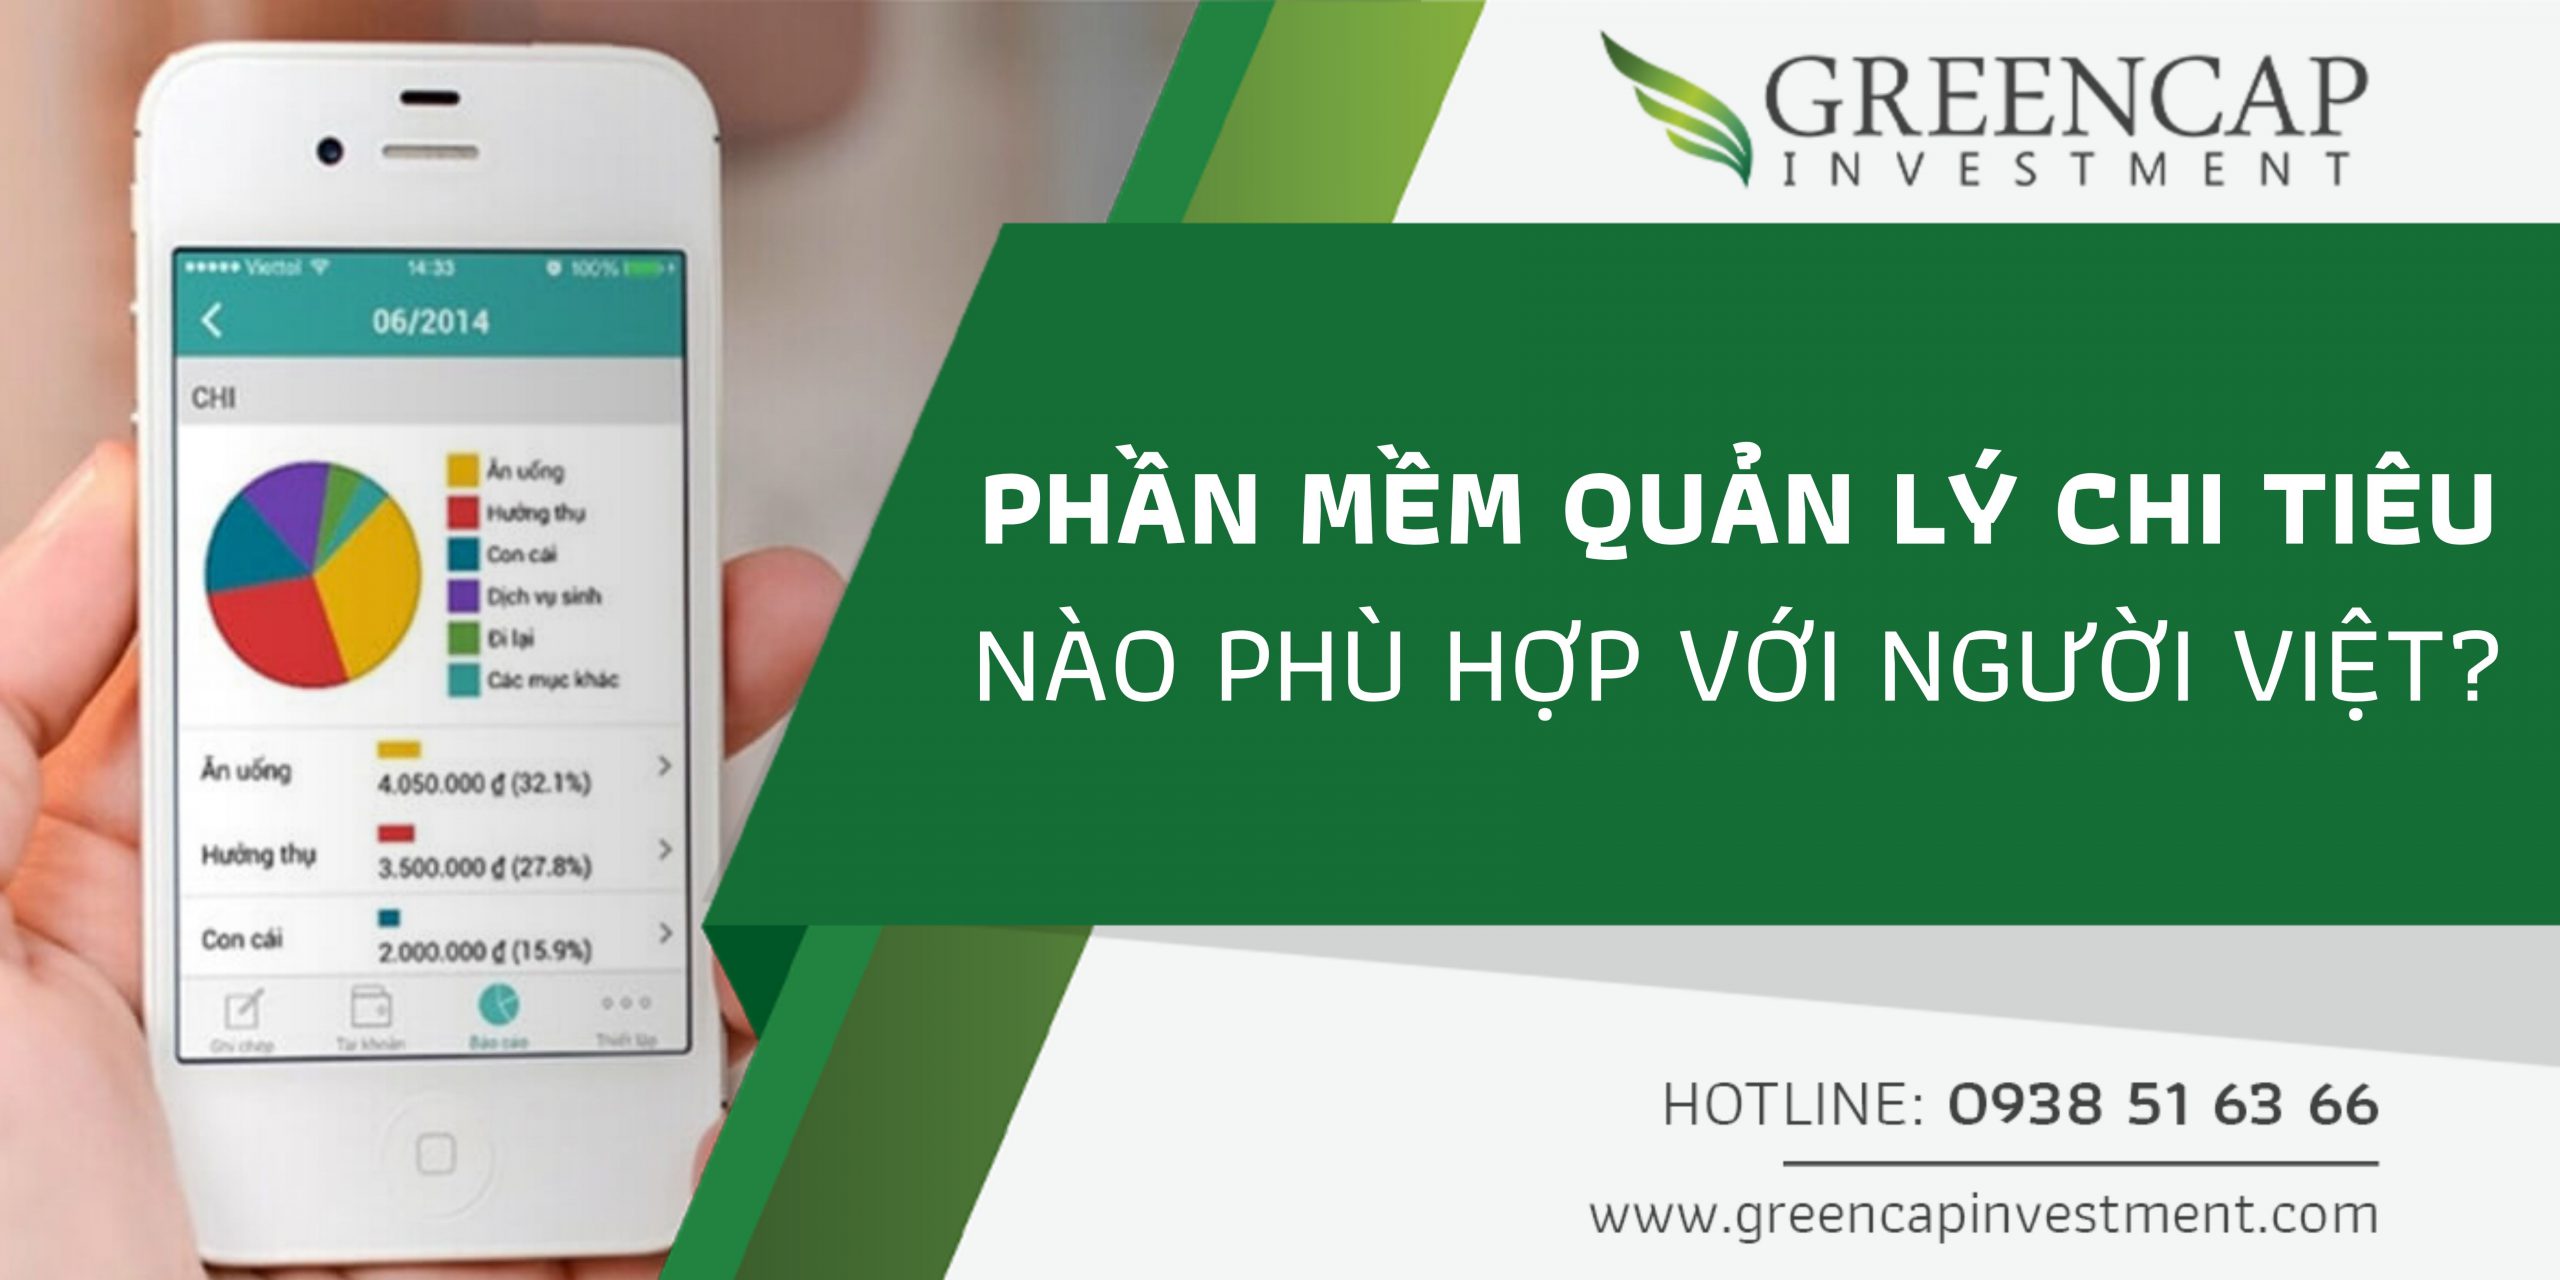 Phần mềm quản lý chi tiêu nào phù hợp với người Việt?